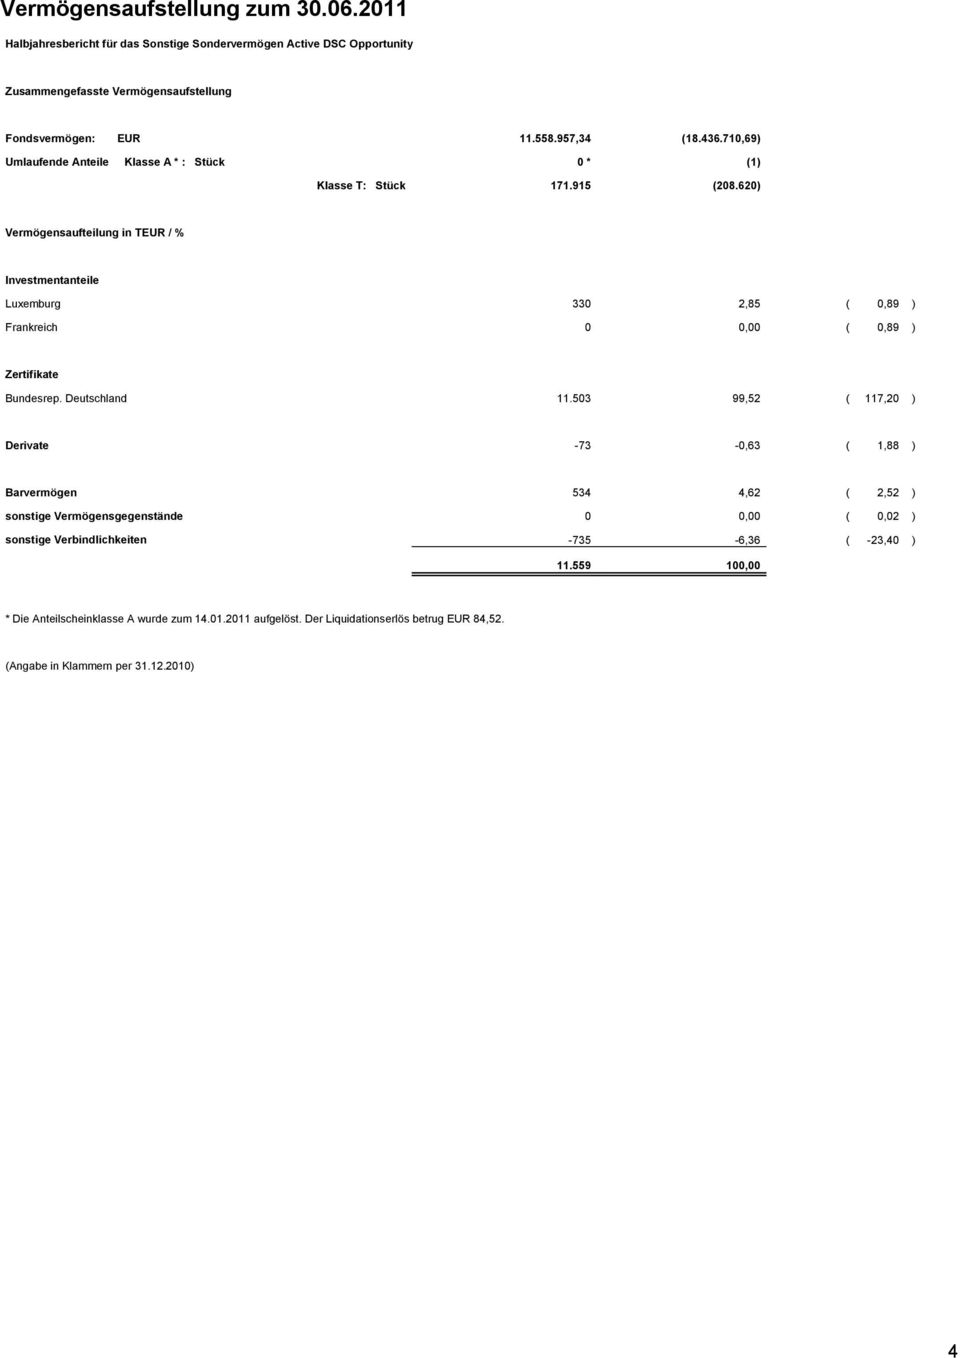 620) Vermögensaufteilung in TEUR / % Investmentanteile Luxemburg 330 2,85 ( 0,89 ) Frankreich 0 0,00 ( 0,89 ) Zertifikate Bundesrep. Deutschland 11.